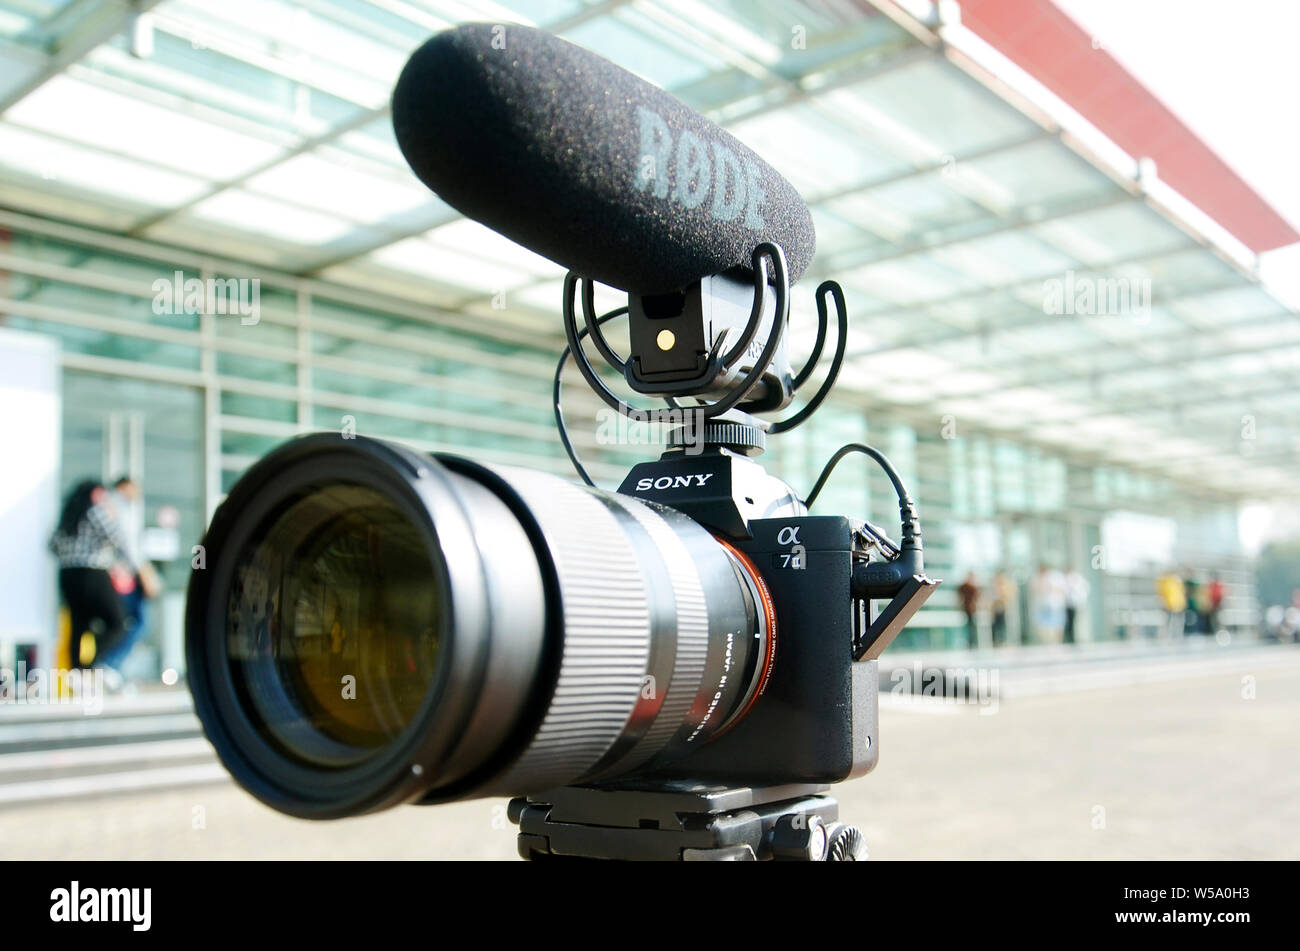 Aufnahmen mit der Kamera Mirorless Sony a7 II, mittlerer Bereich Tamron  Objektiv weiss 70mm, mit externen Mikrofon Rode für Aufnahme  Stockfotografie - Alamy